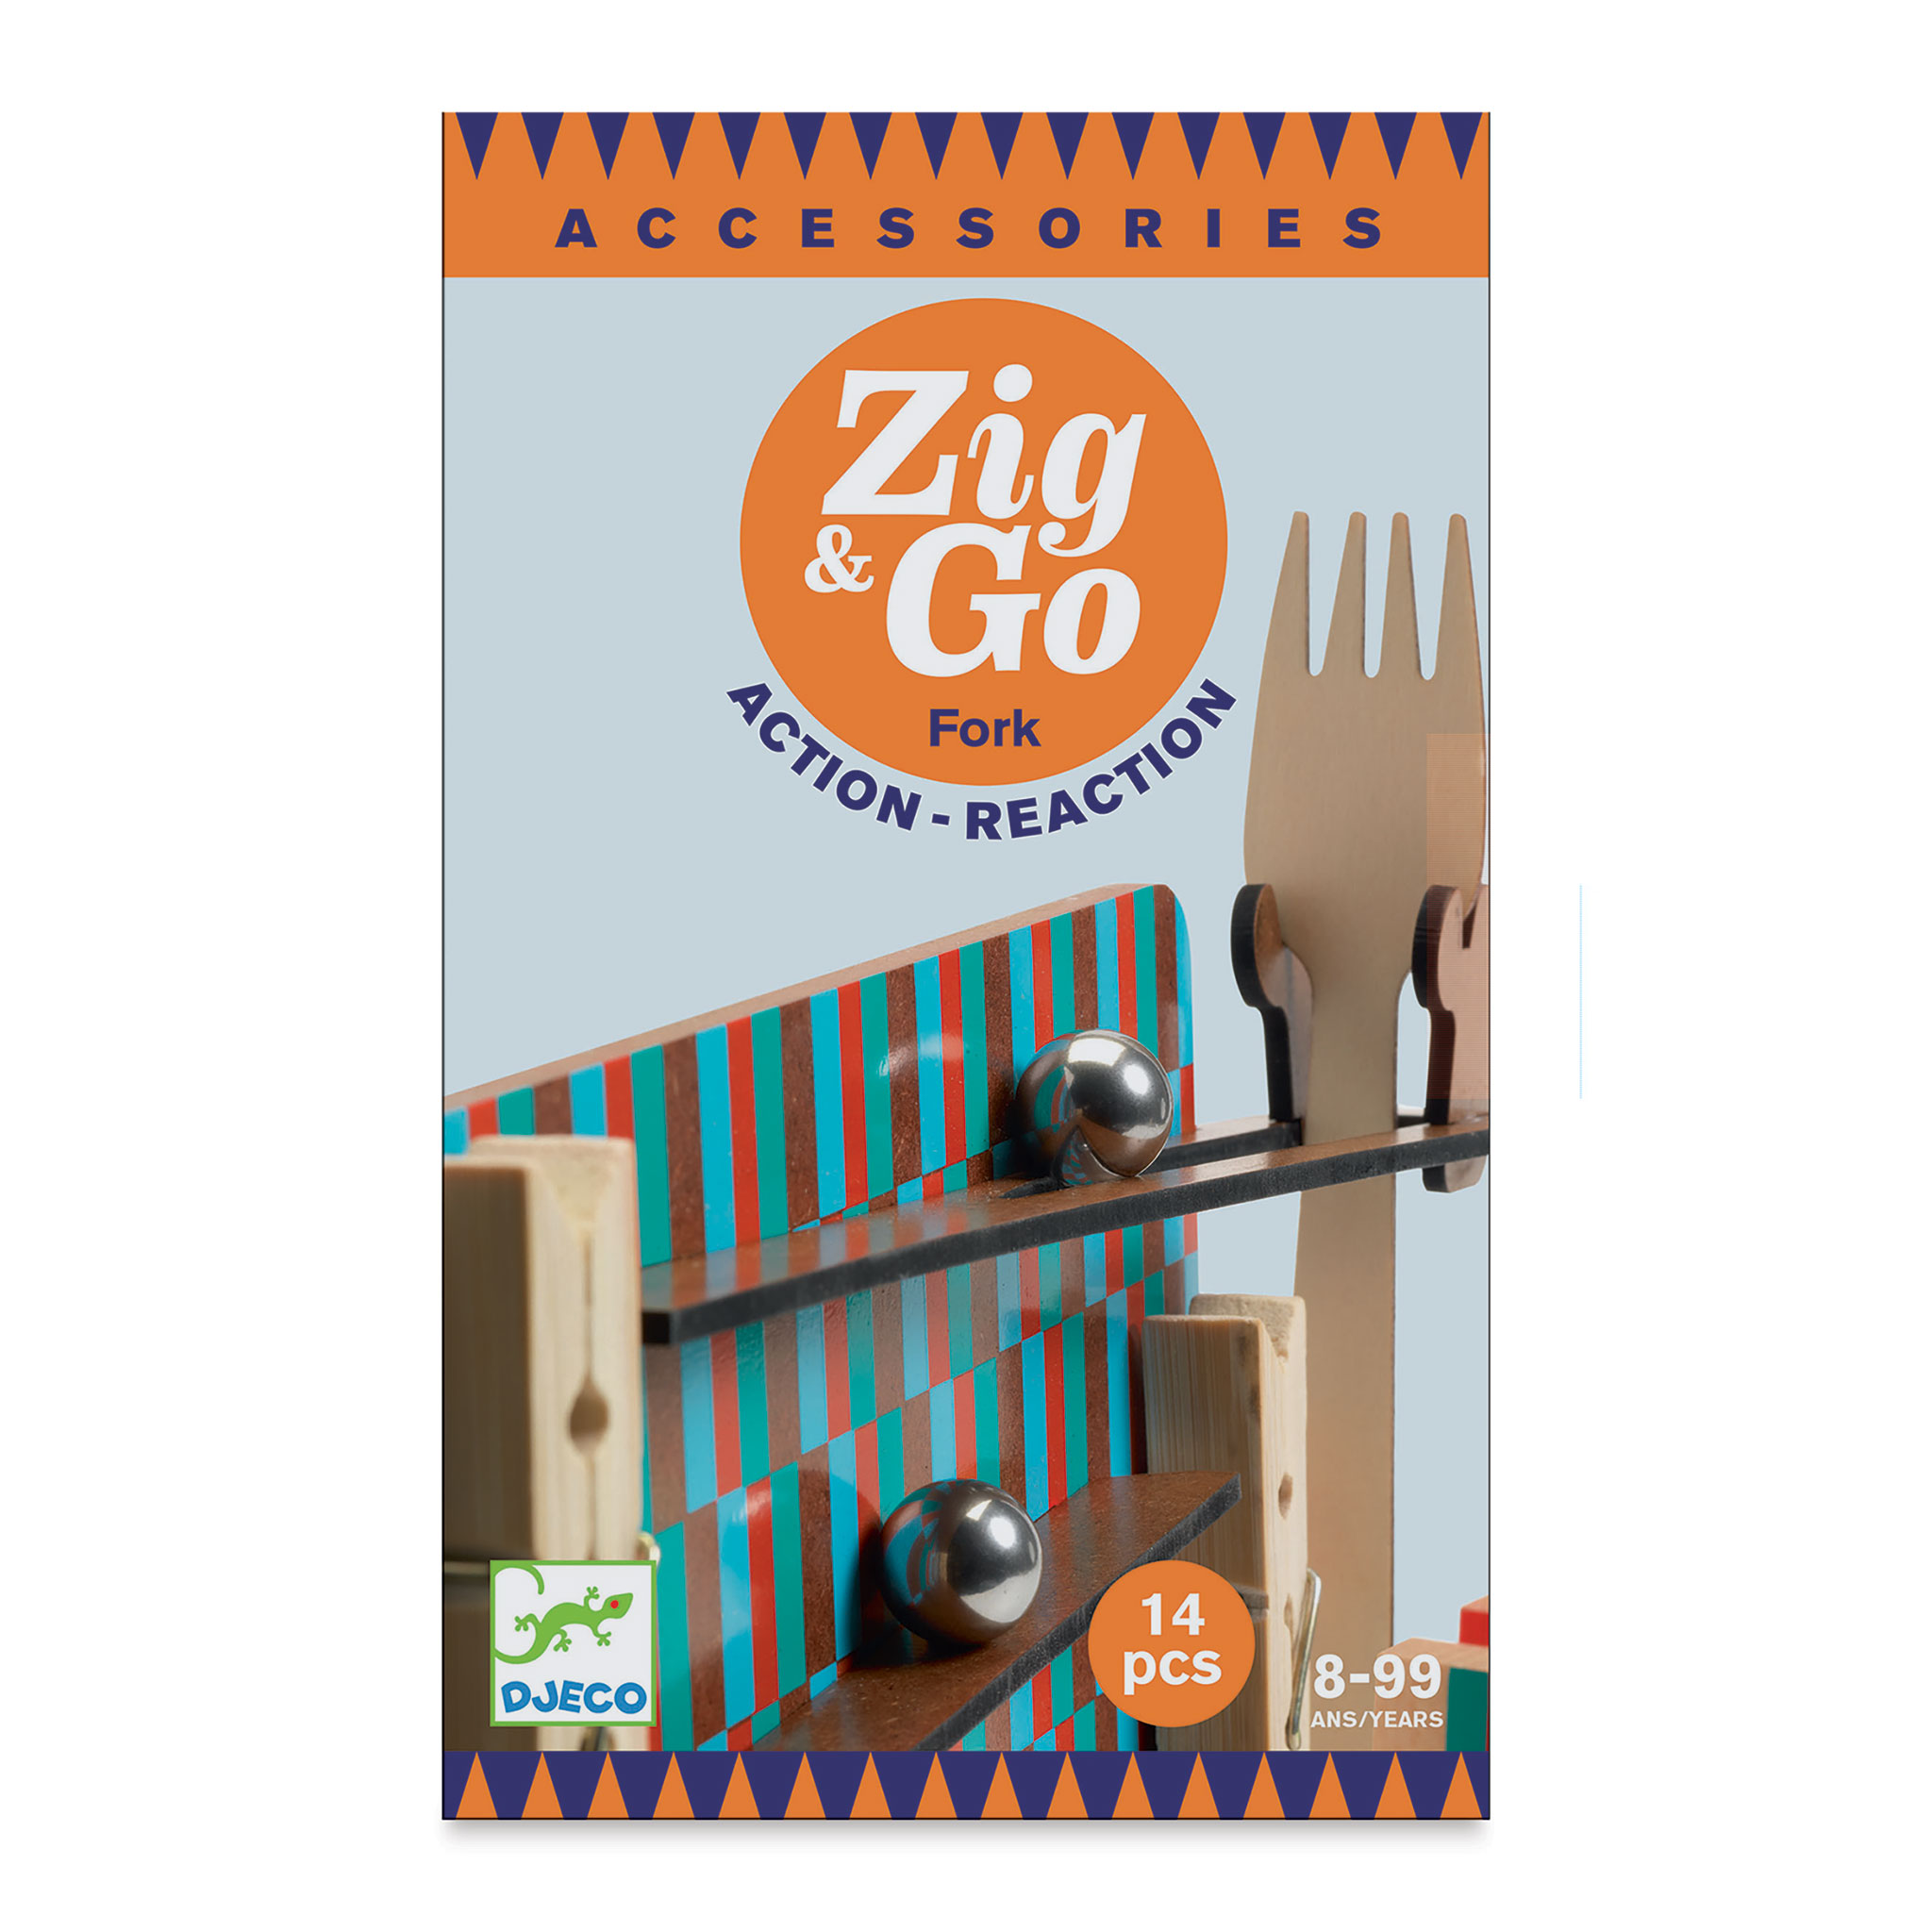 Zig & Go – Child's Play